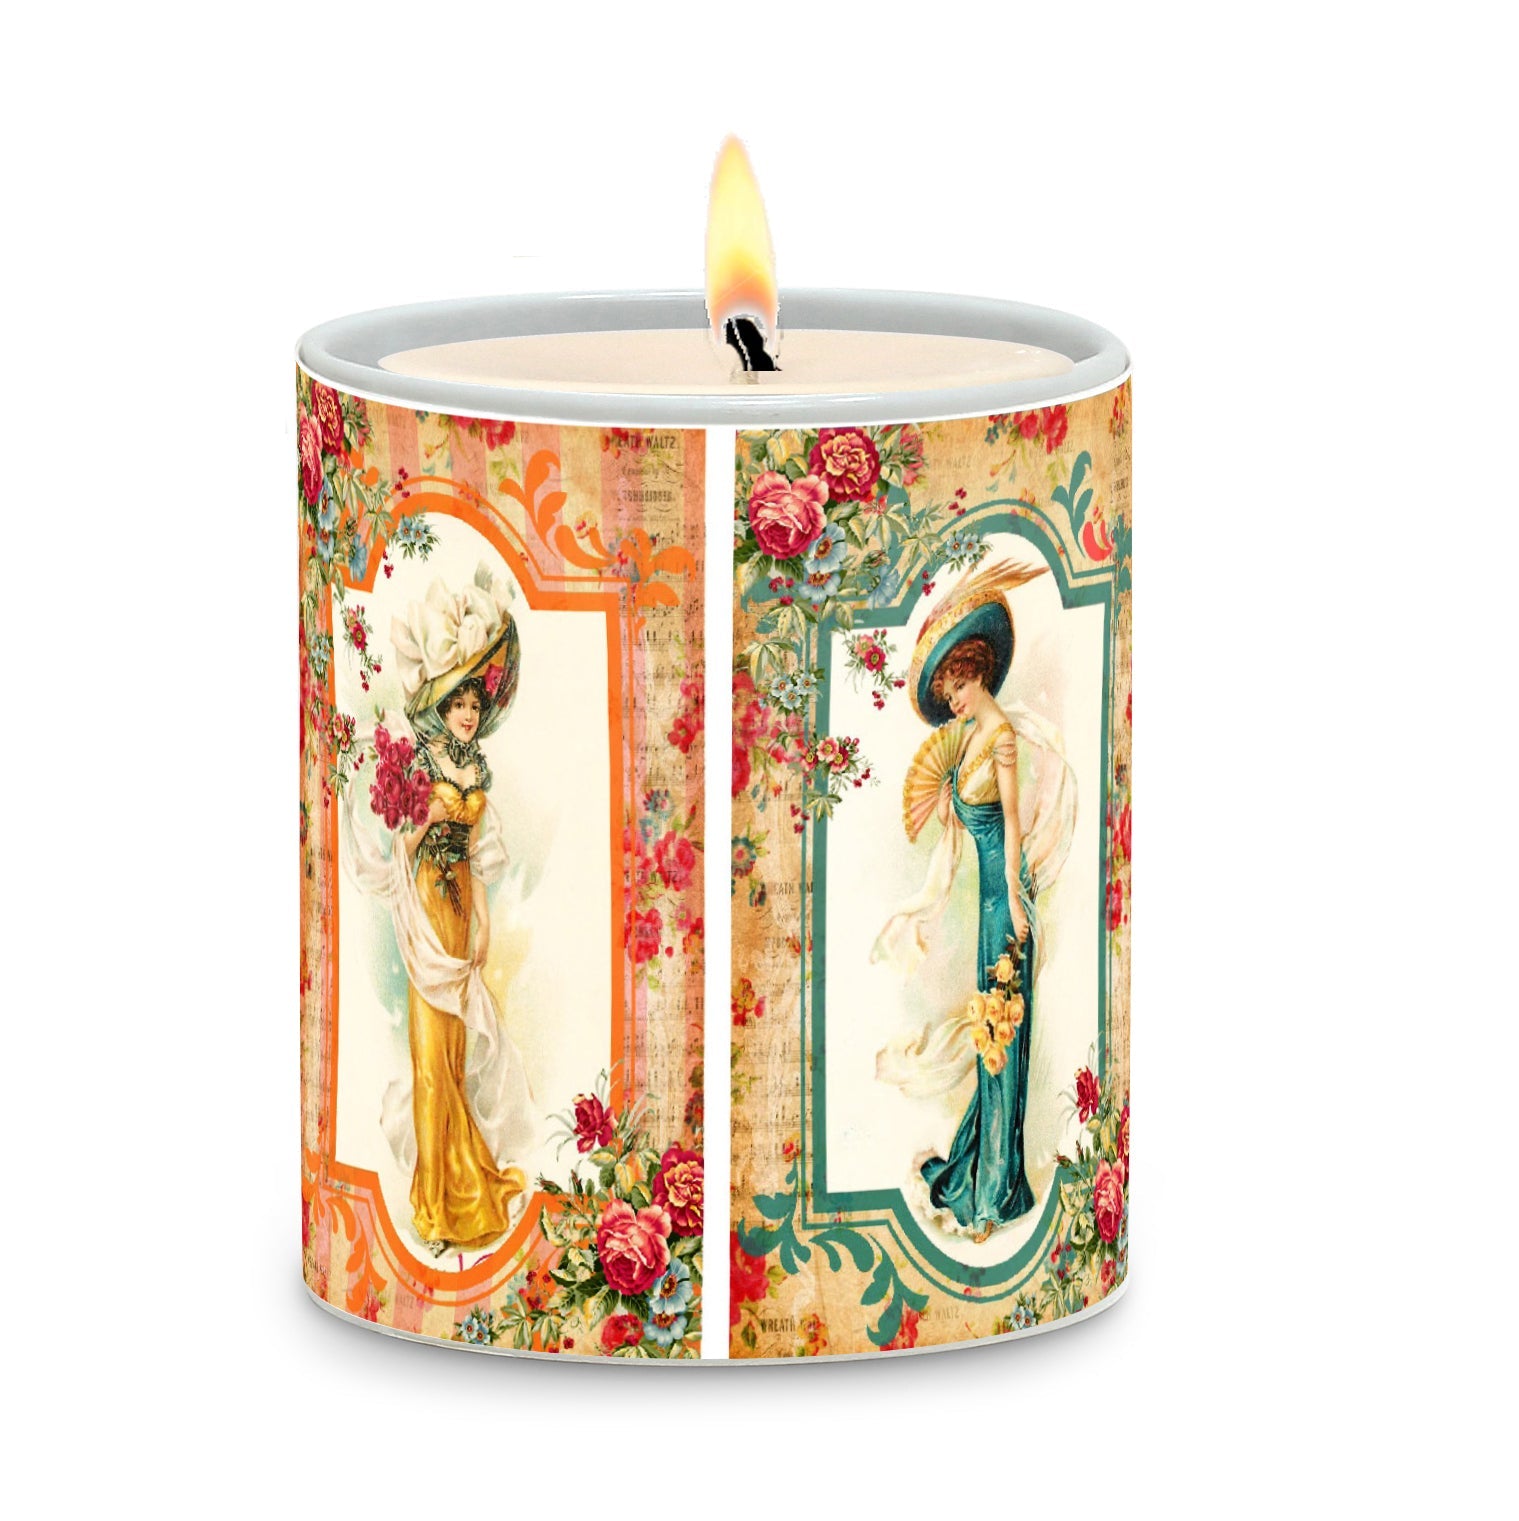 SUBLIMART: Damas - Porcelain Soy Wax Candle (Design #DMS01)